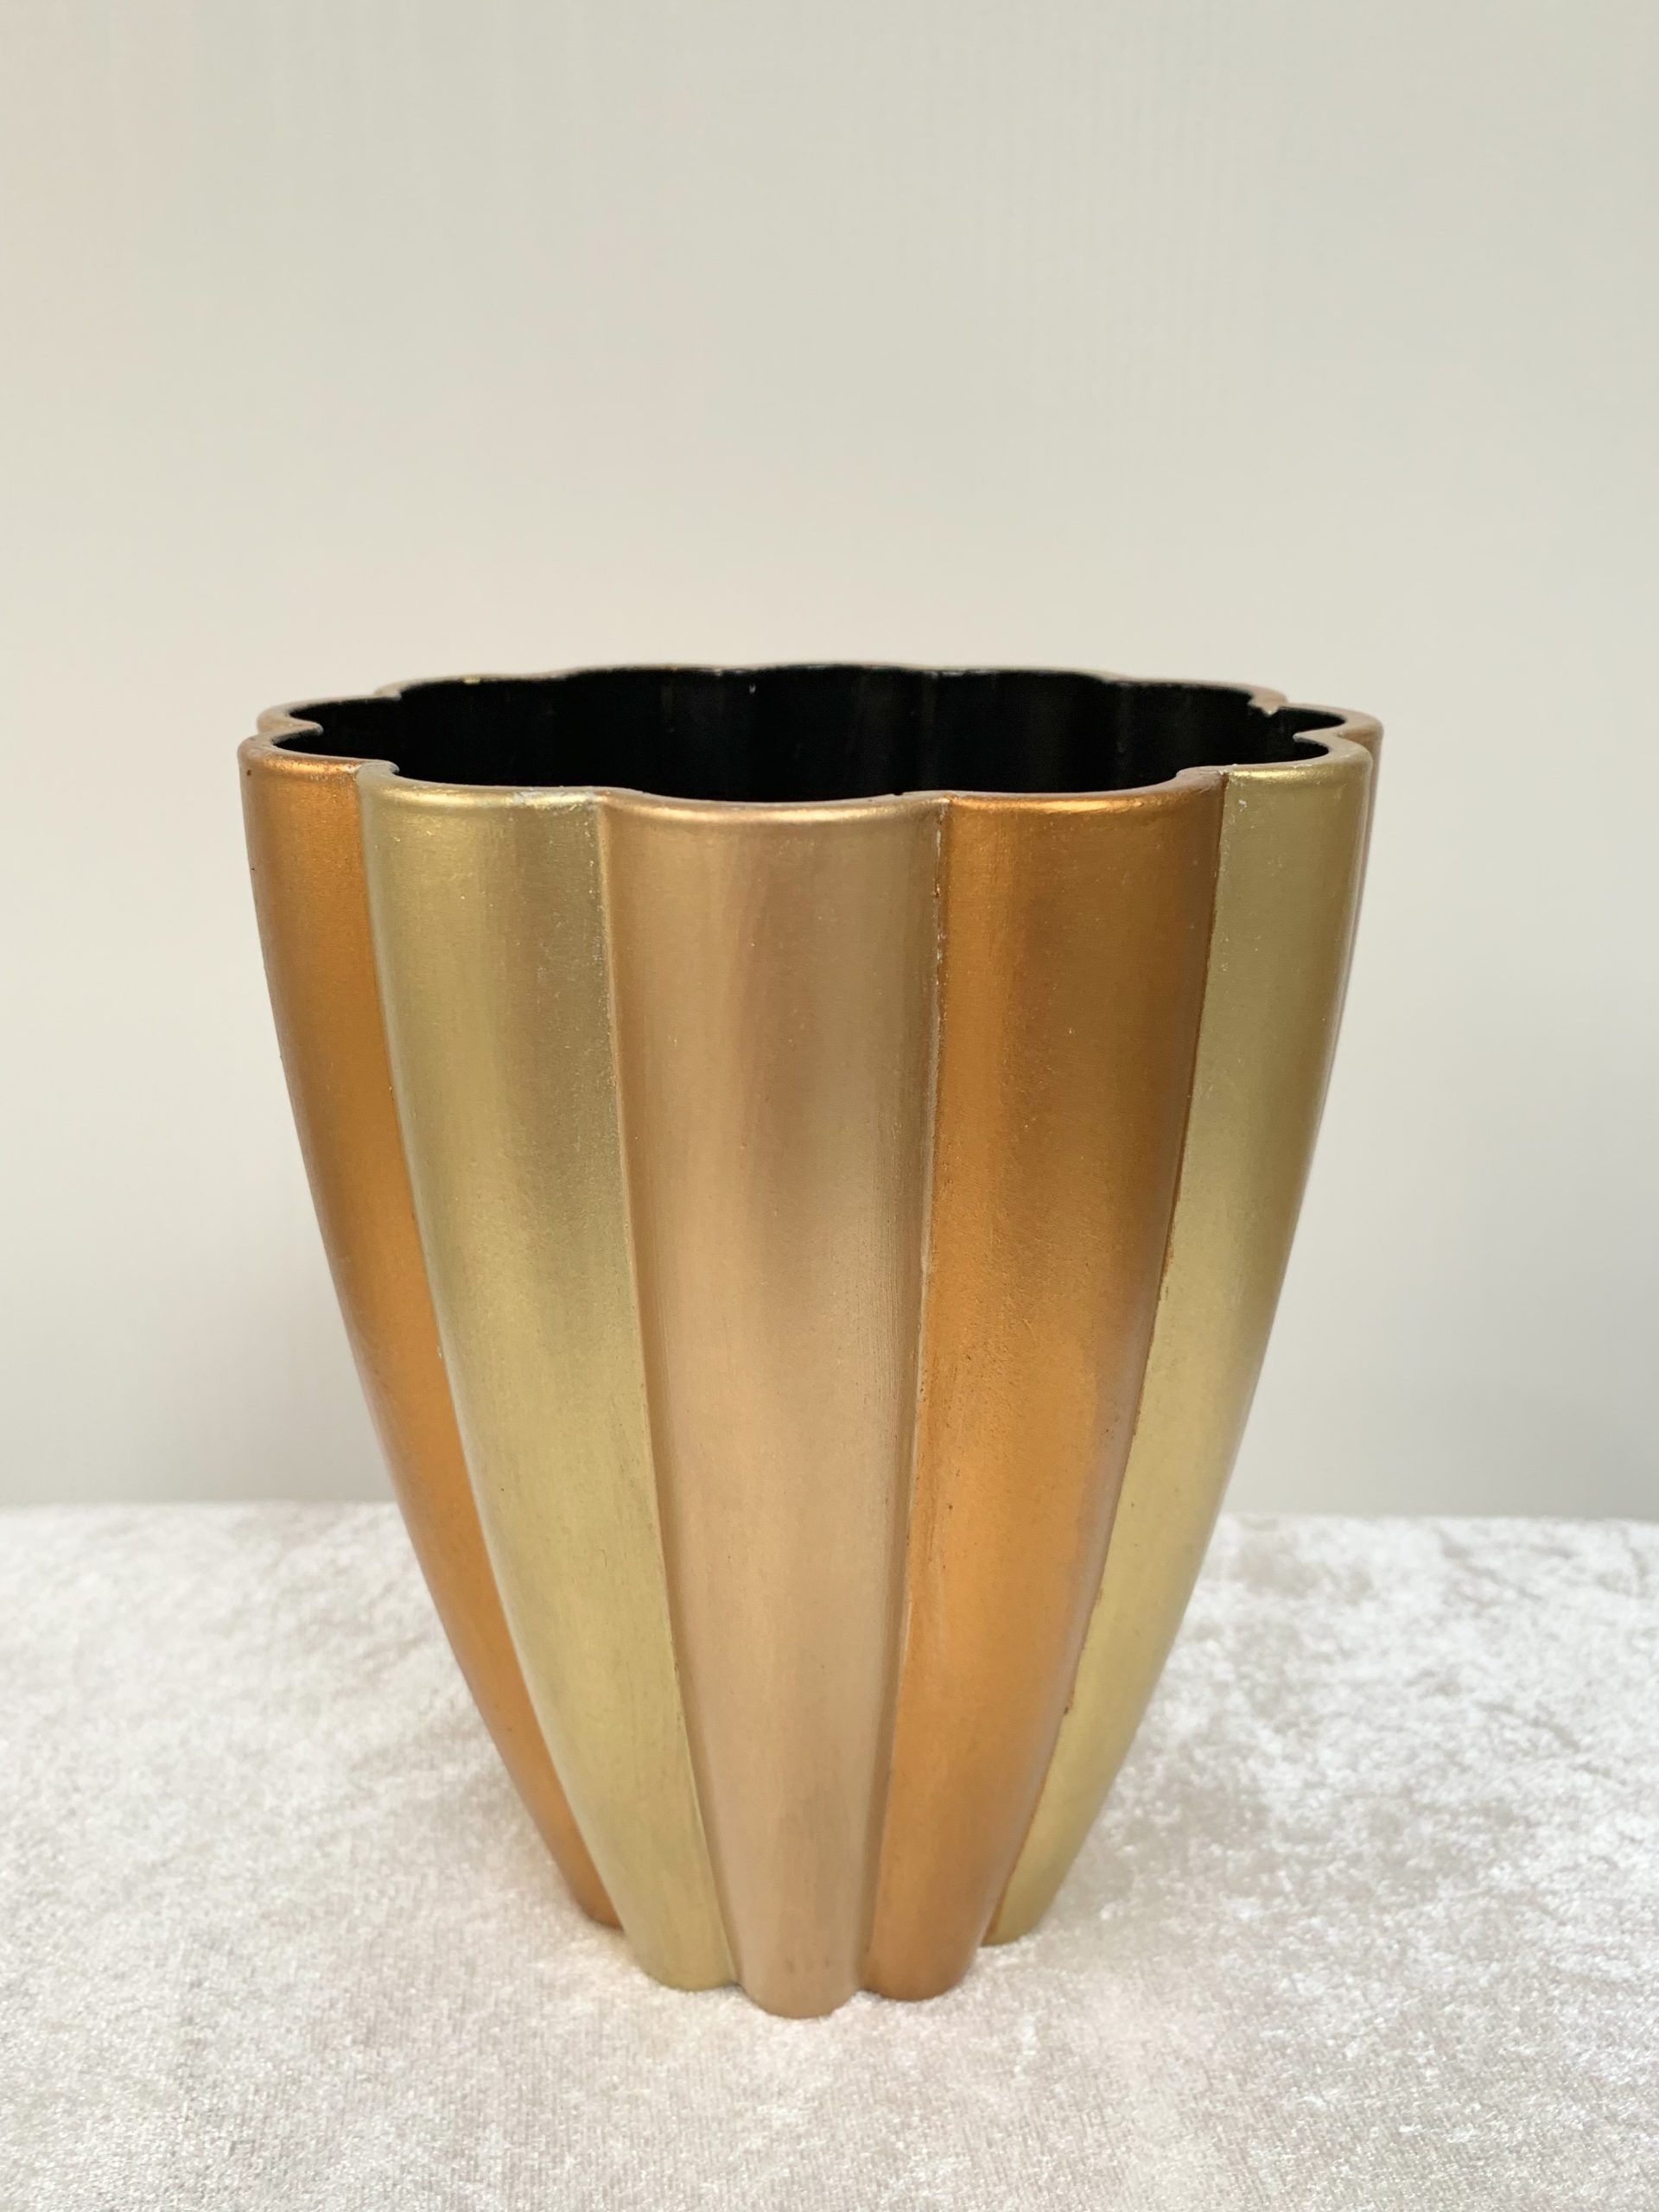 Vase i 3 x forskellig guld